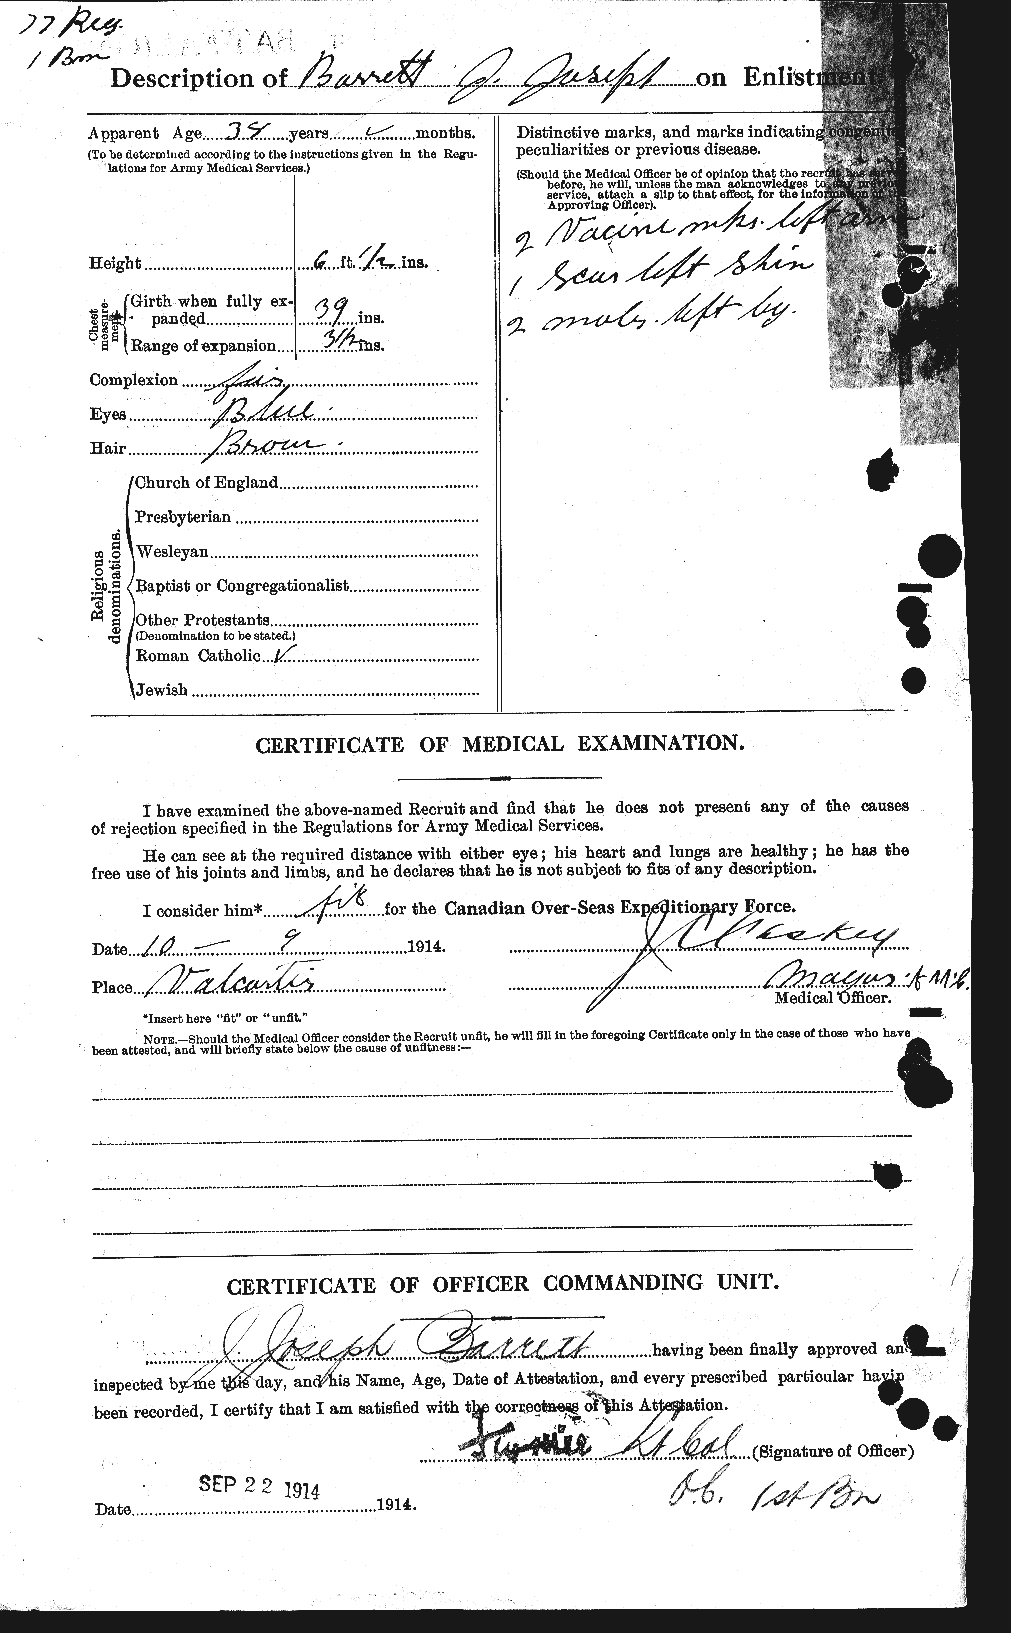 Dossiers du Personnel de la Première Guerre mondiale - CEC 220235b